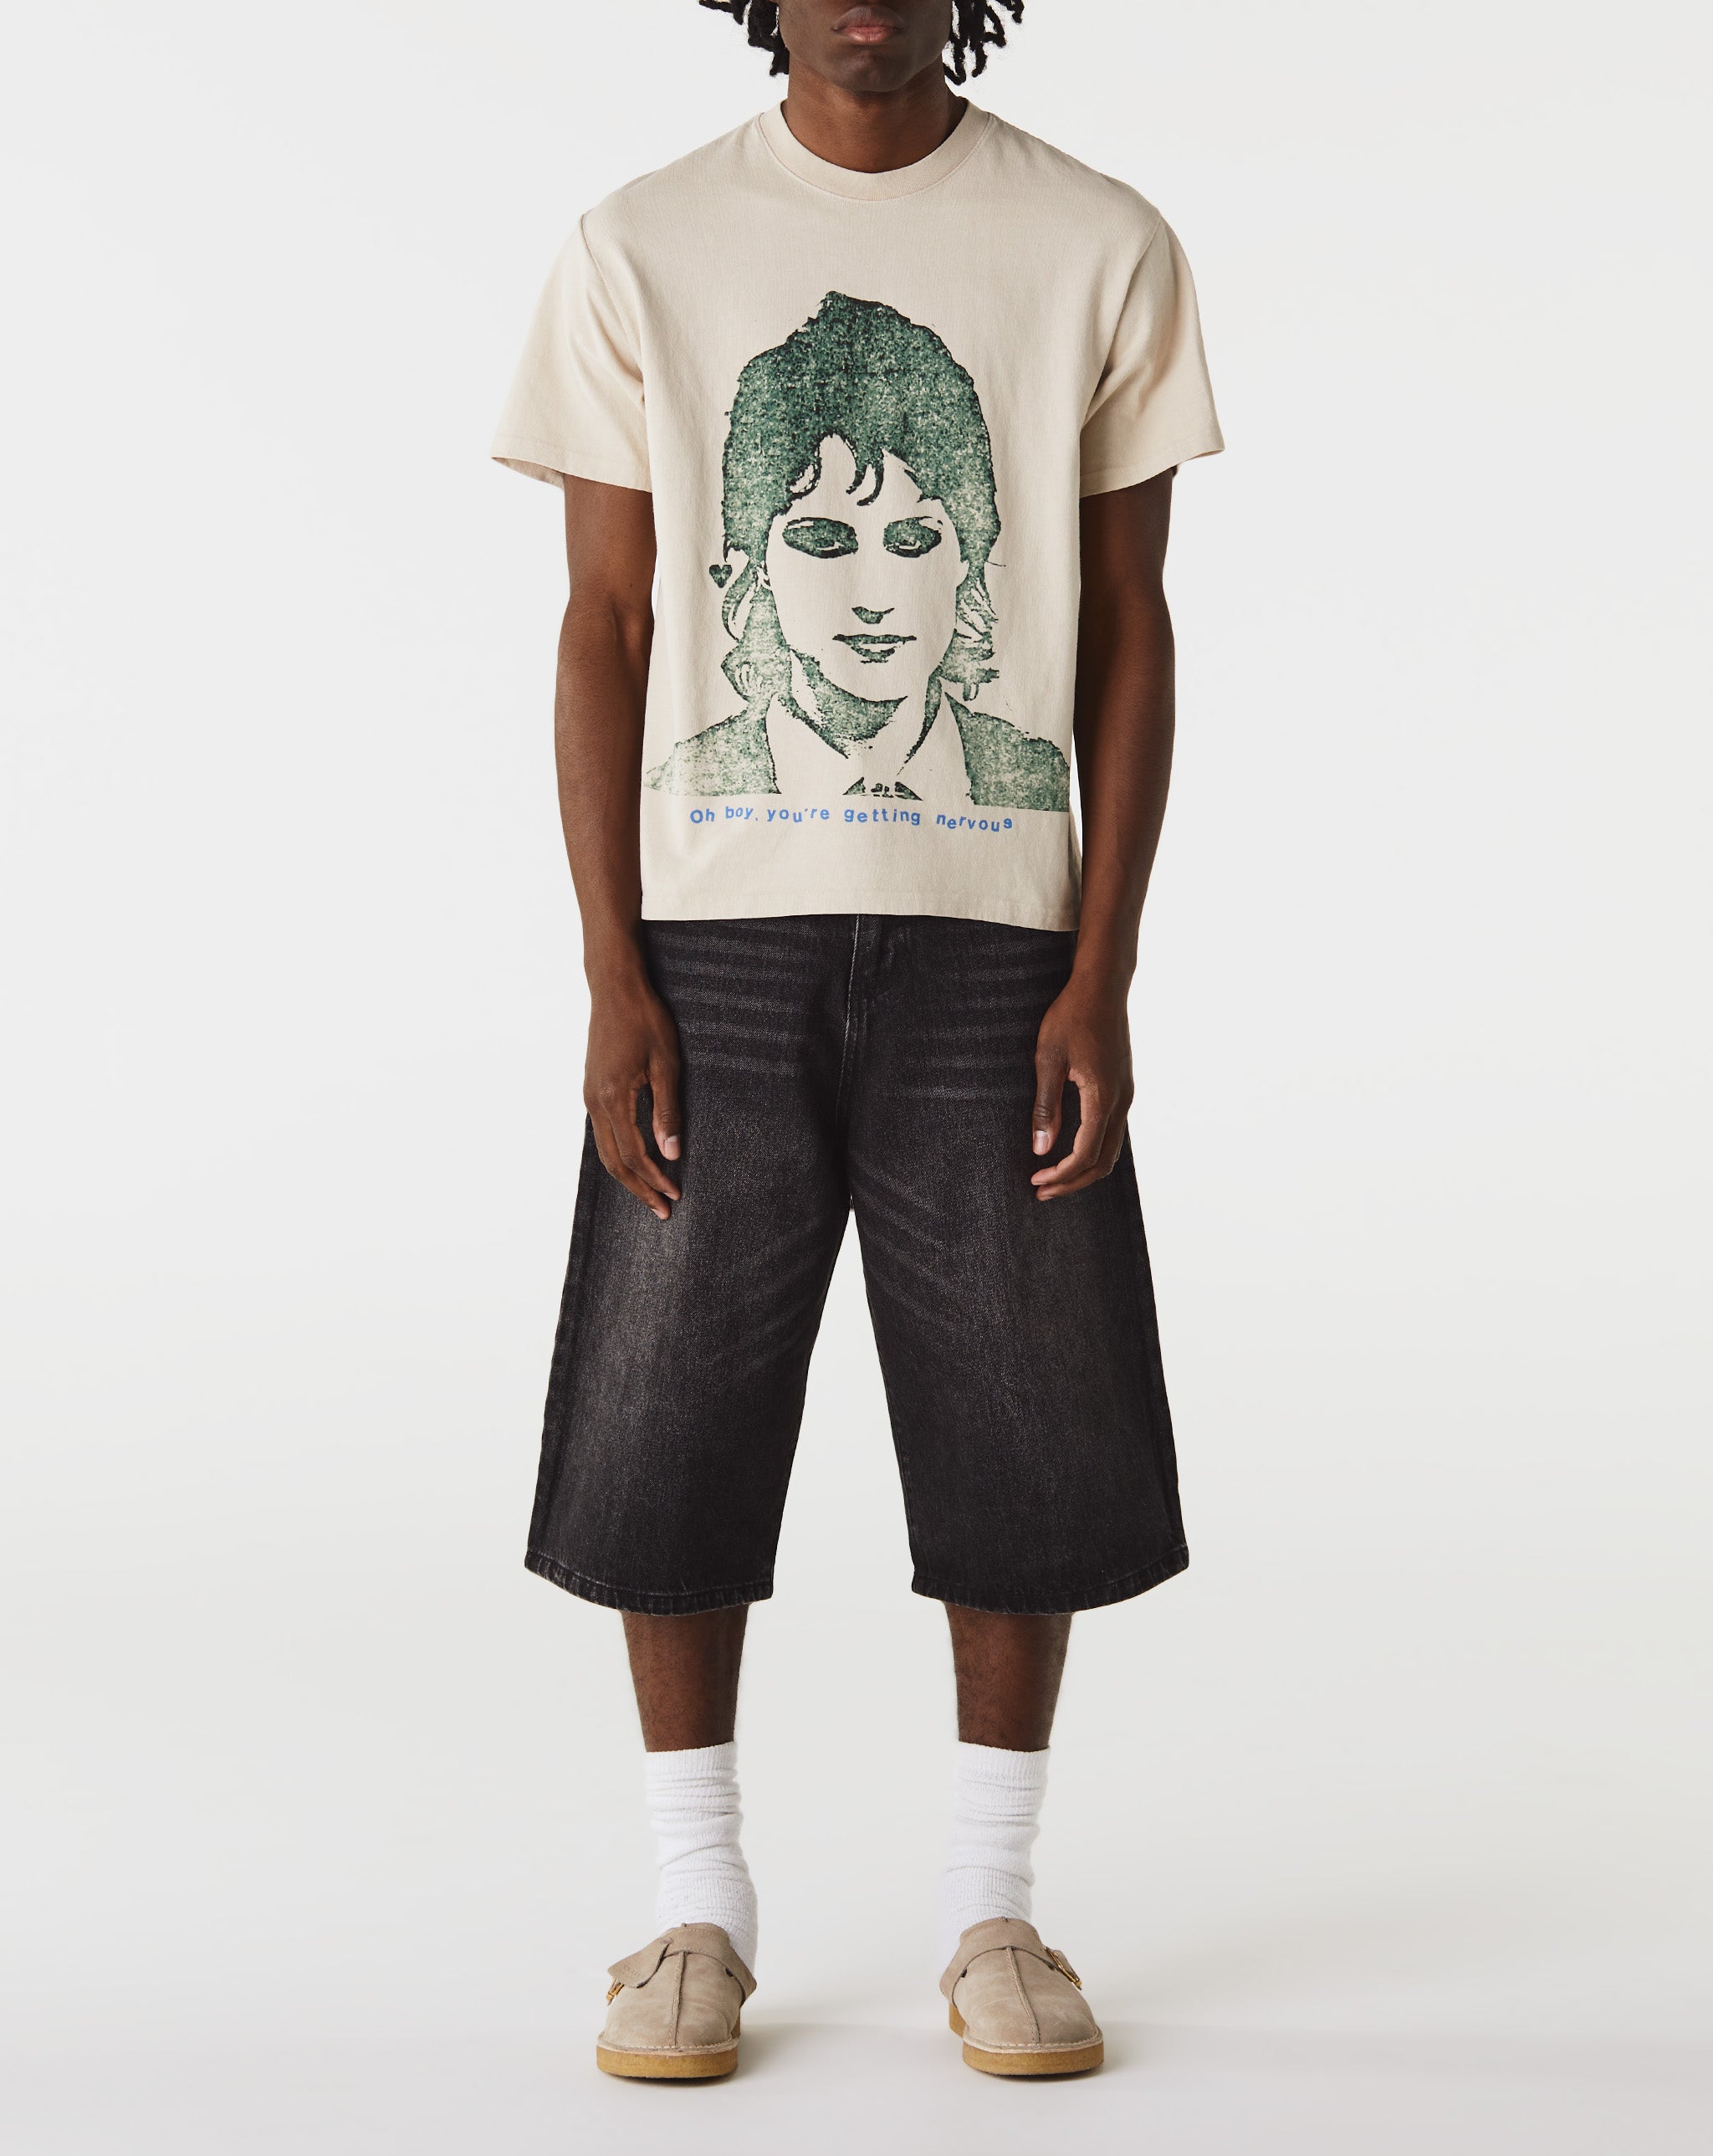 Basketcase Gallery Chaos T-Shirt  - Cheap Urlfreeze Jordan outlet